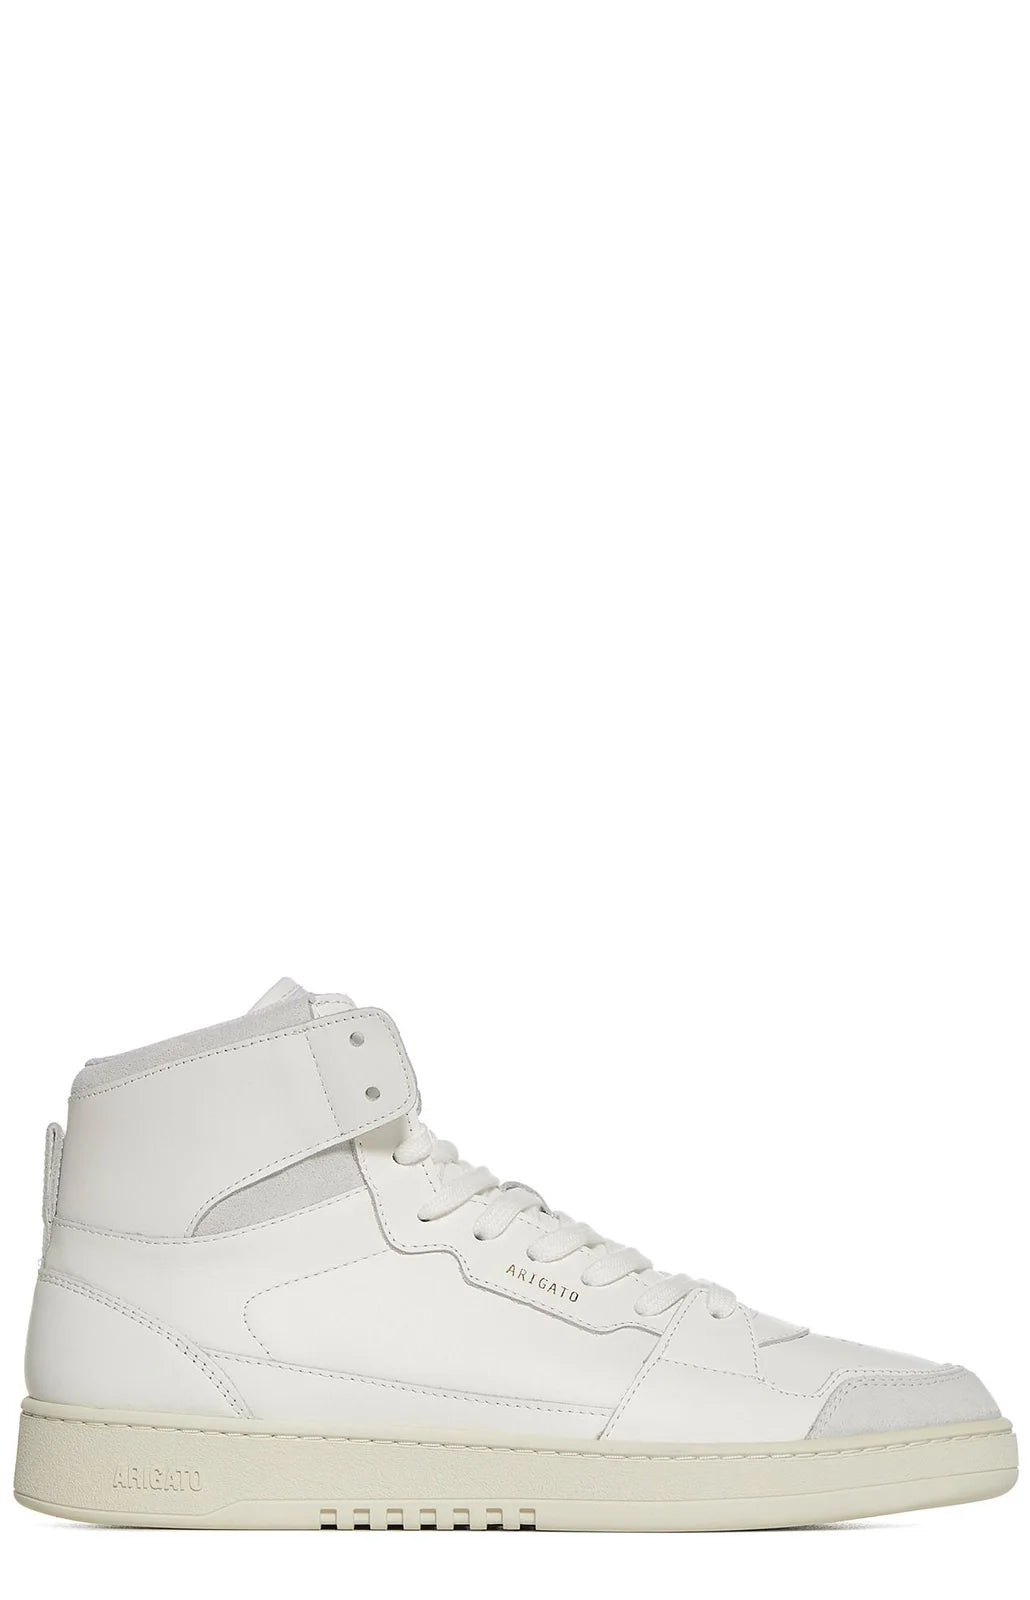 Dice hi sneakers - white